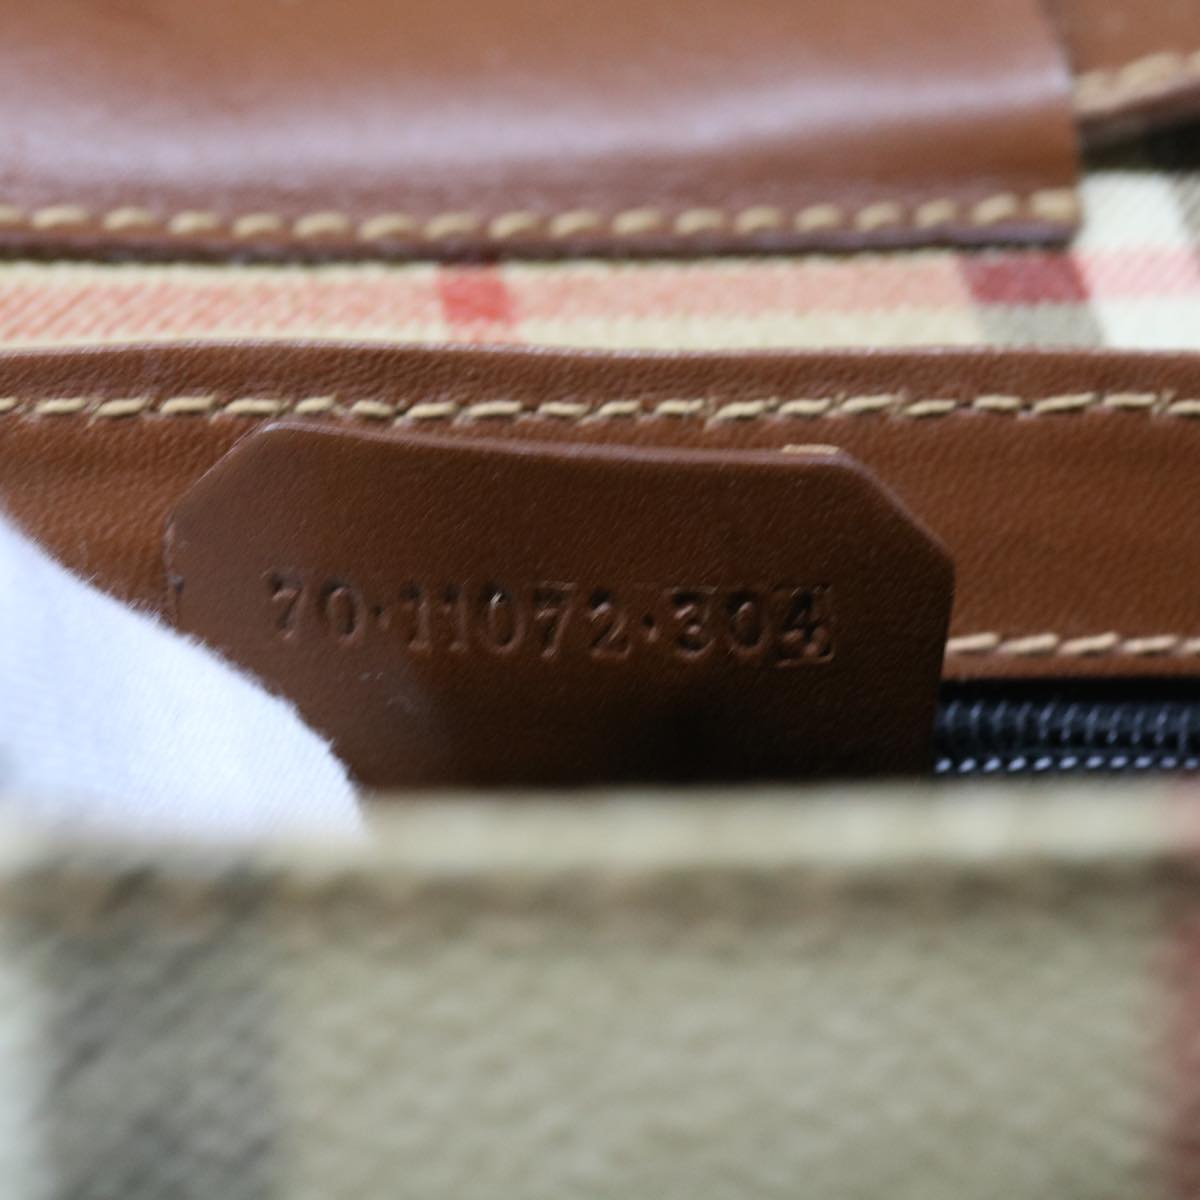 Burberrys Nova Check Shoulder Bag PVC Leather Beige Auth 55532